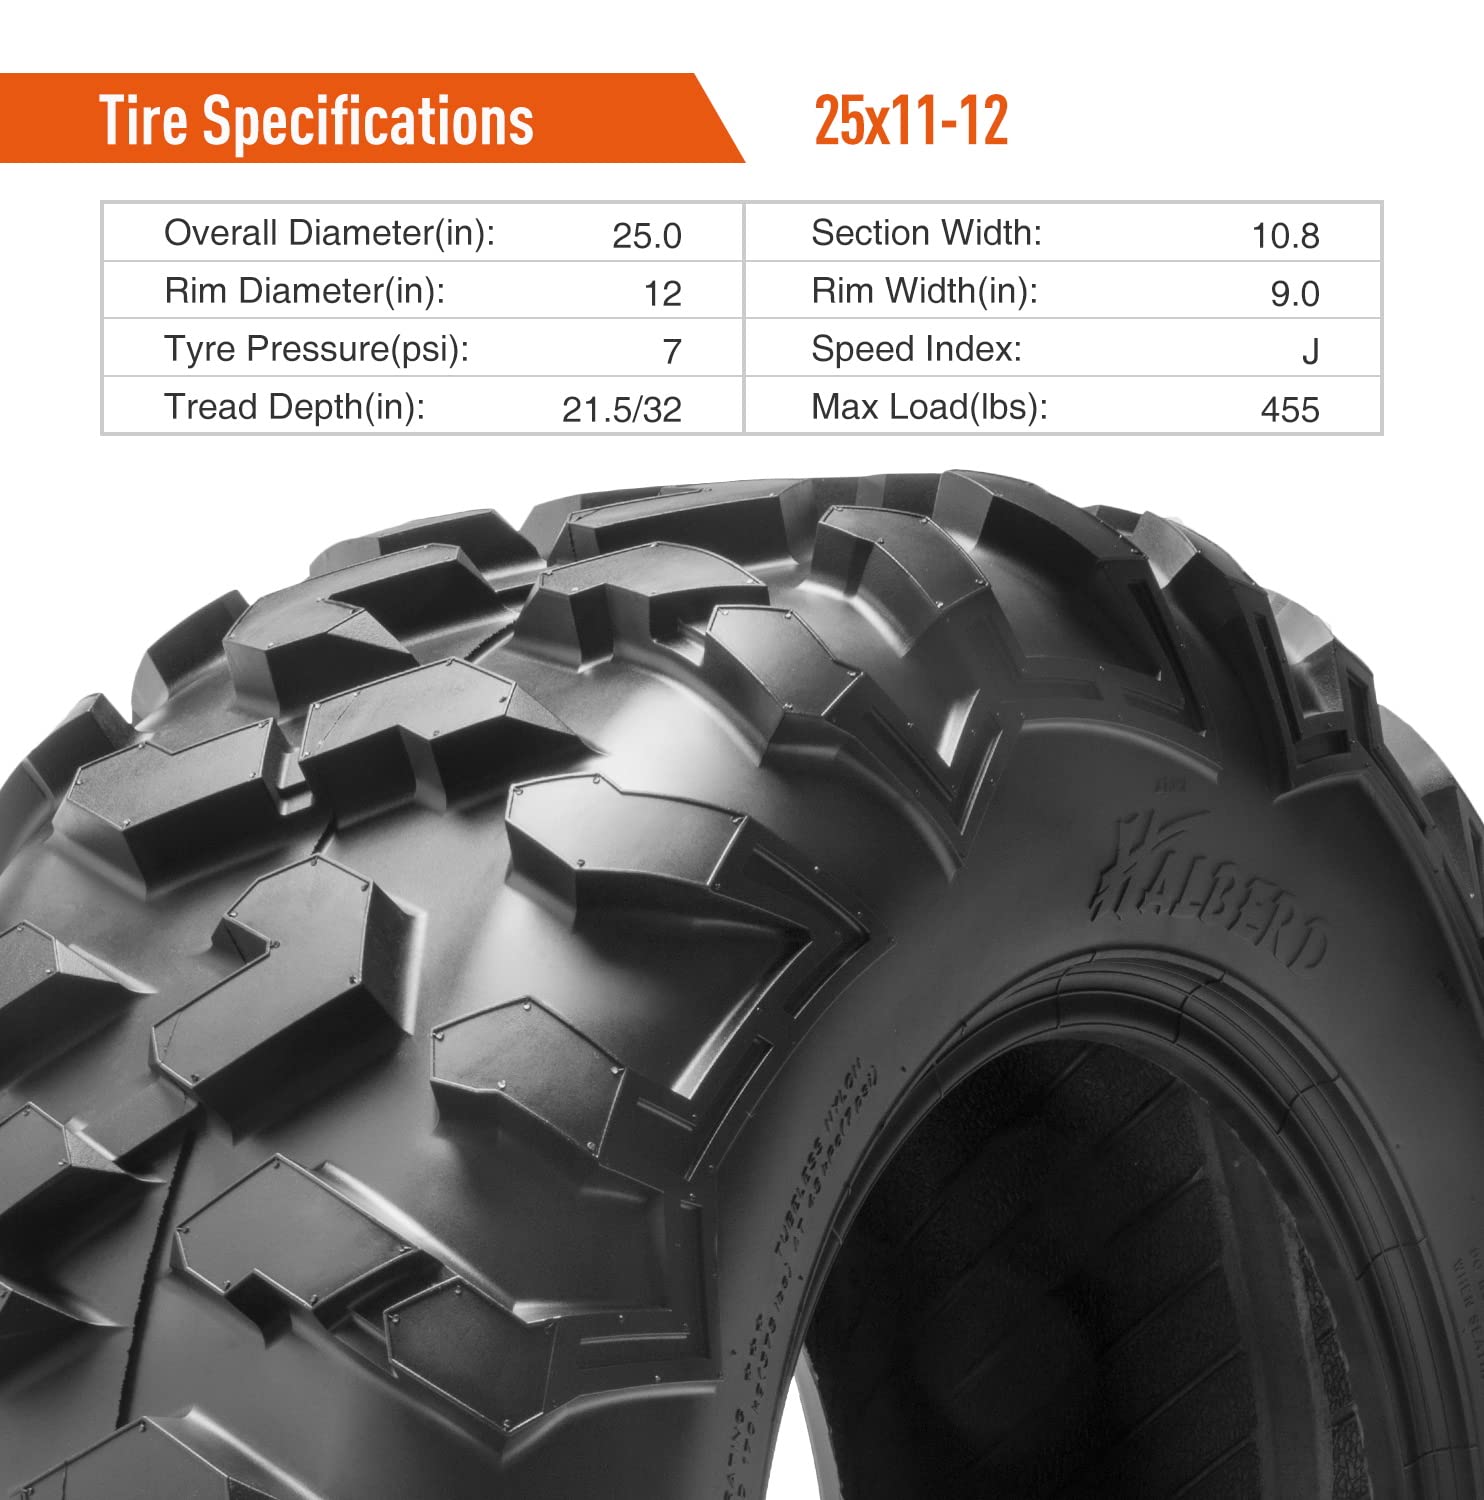 Halberd HU01 25x11-12 ATV Tires Set of 2